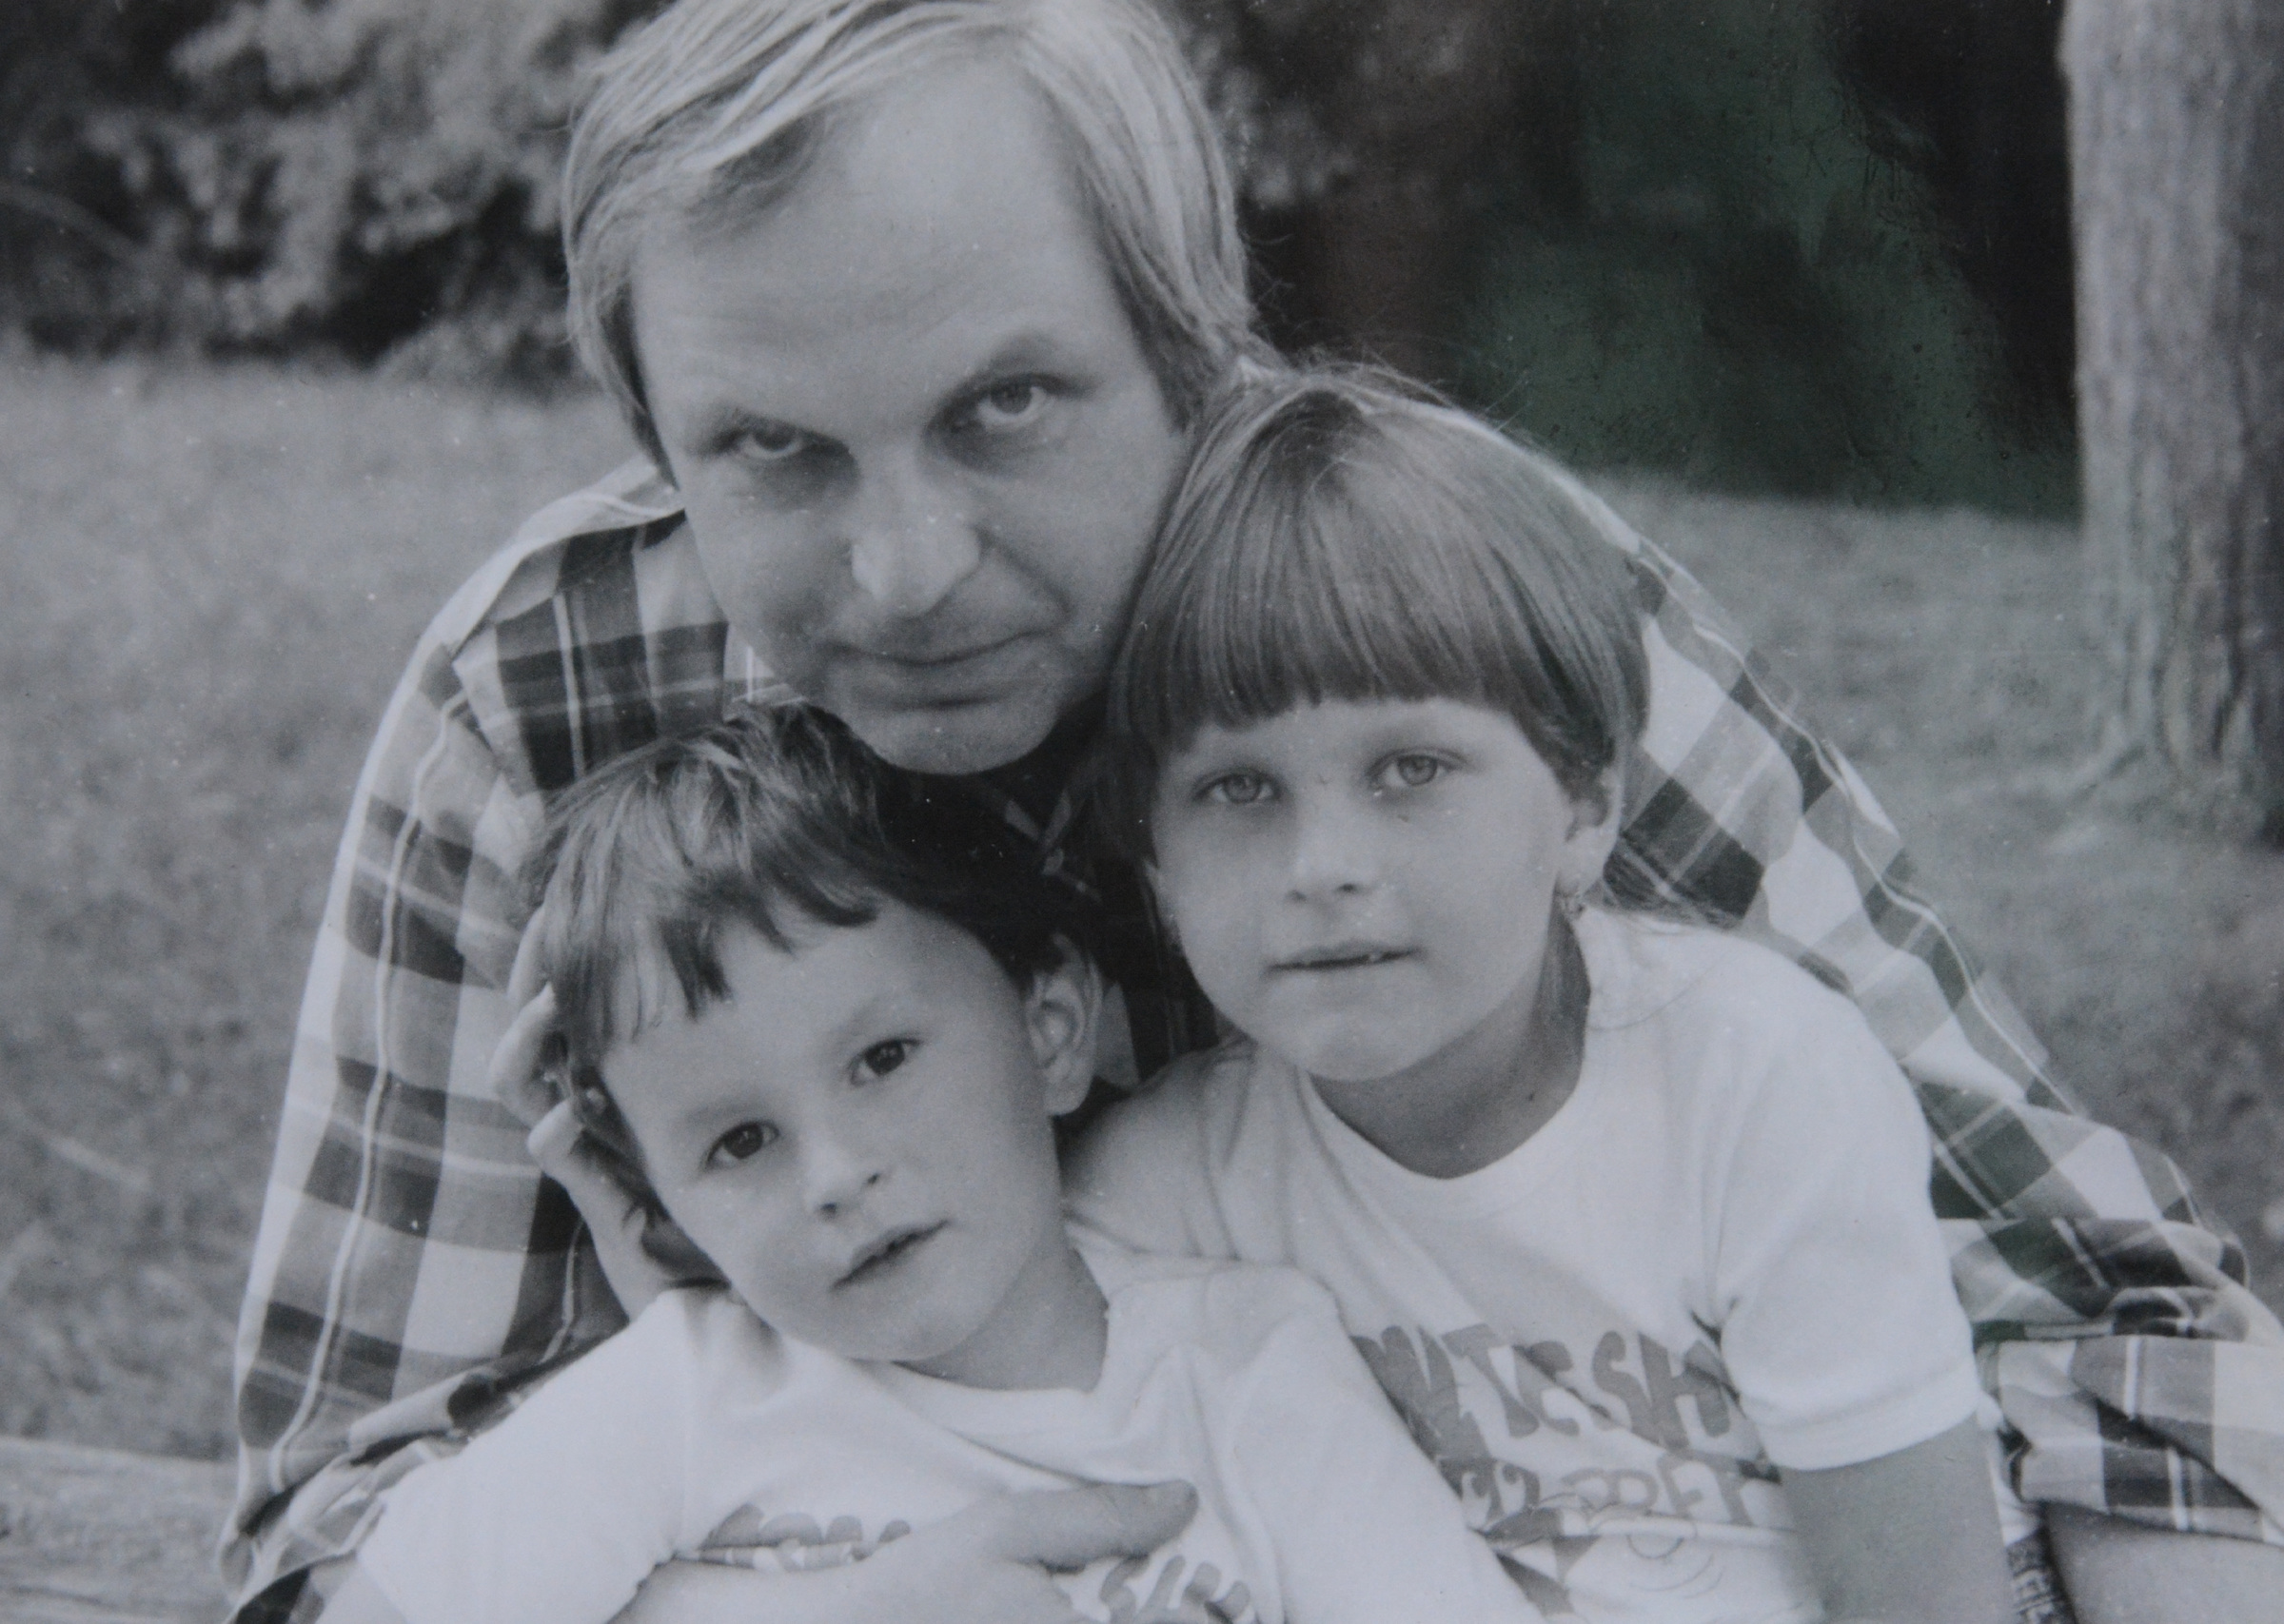 1988 - with children